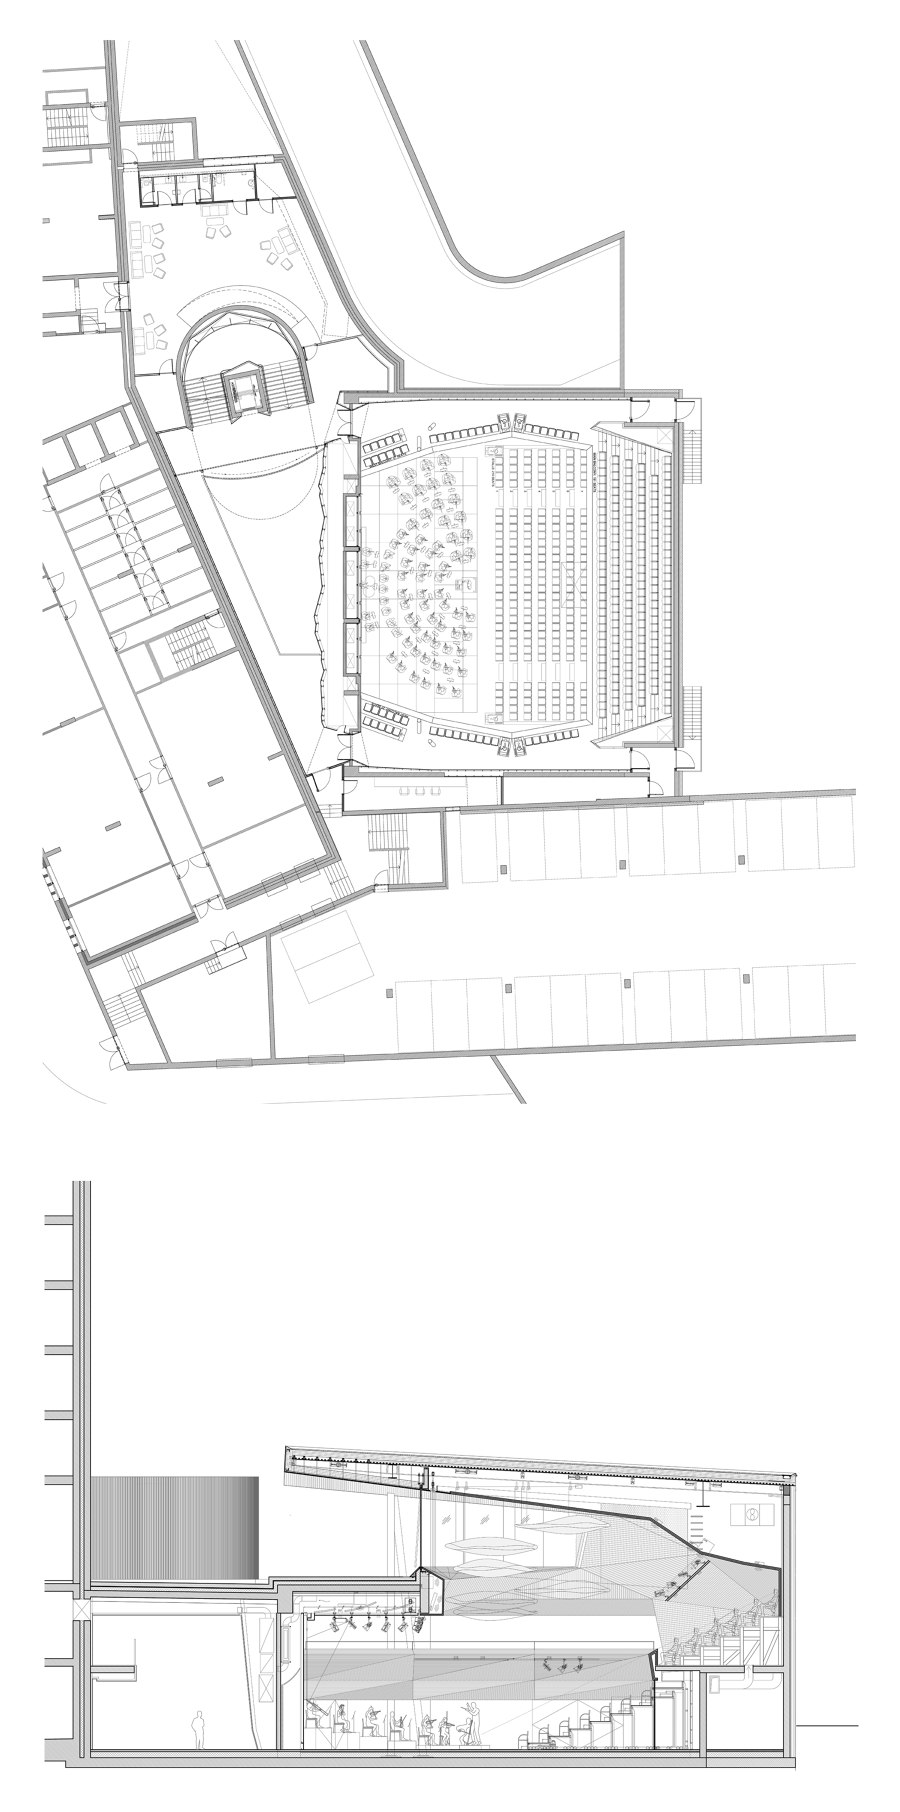 Andermatt Concert Hall von Studio Seilern Architects | Konzerthallen